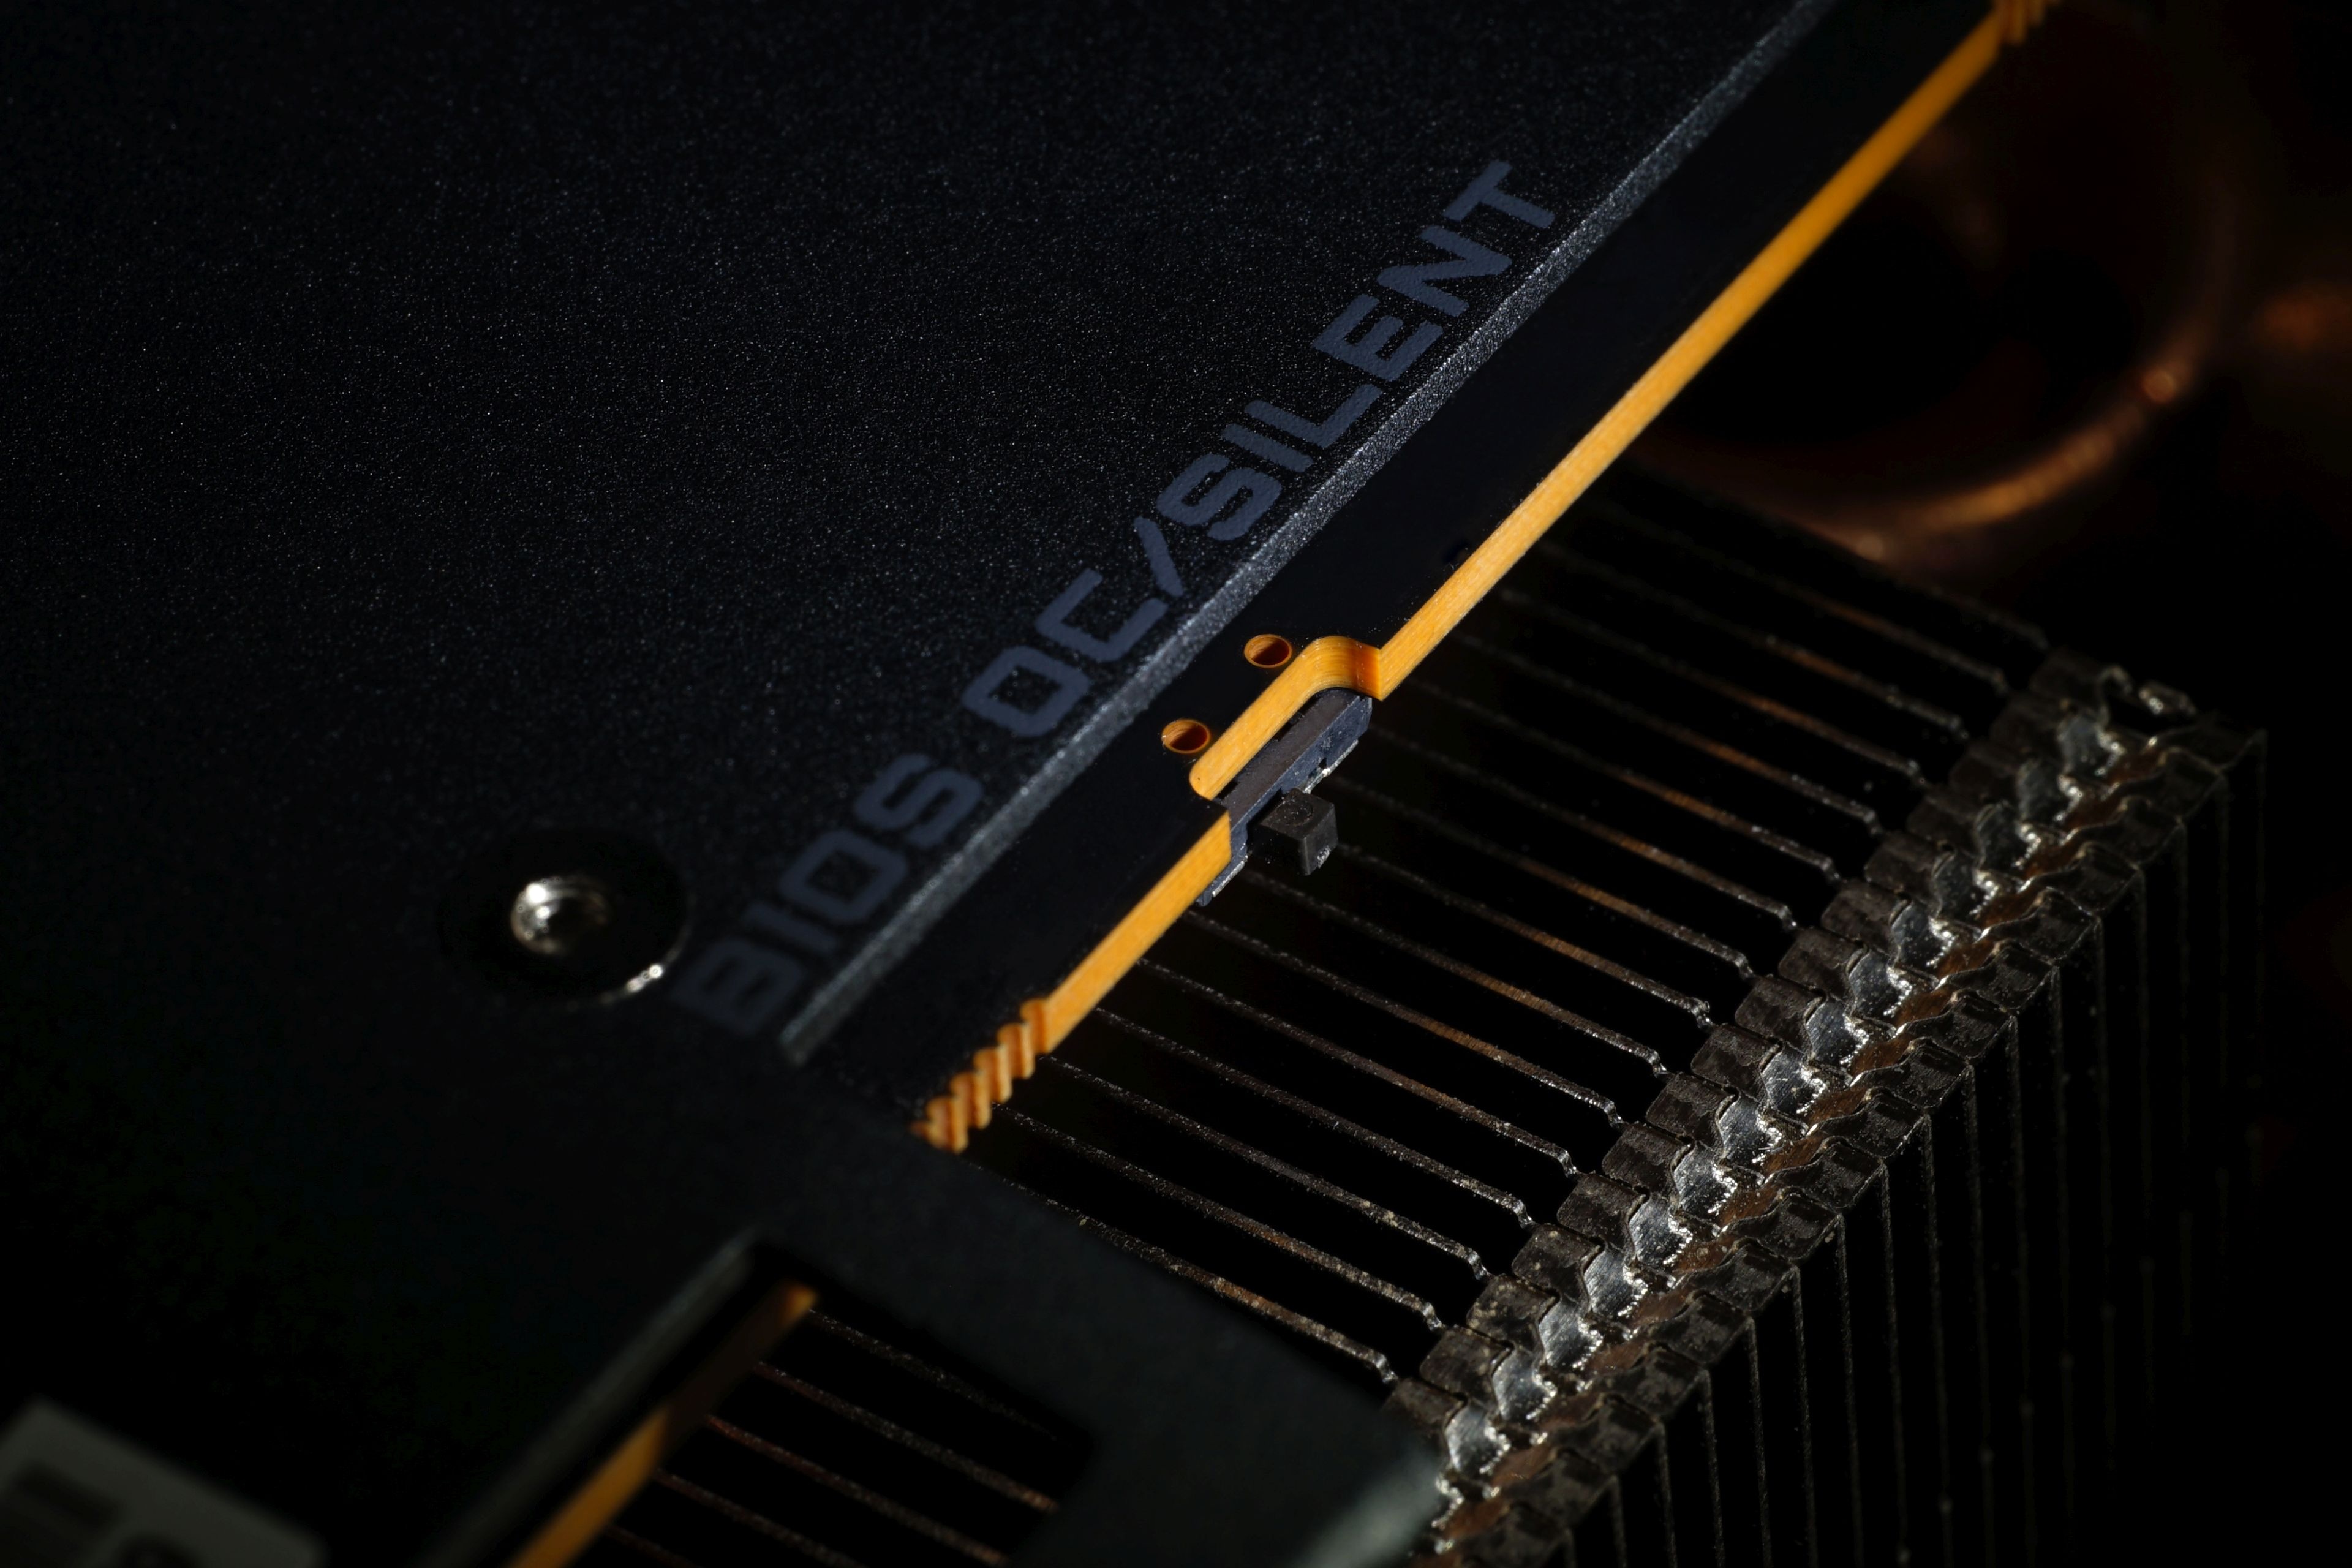 AORUS Radeon™ RX 7900 XTX ELITE 24G Key Features